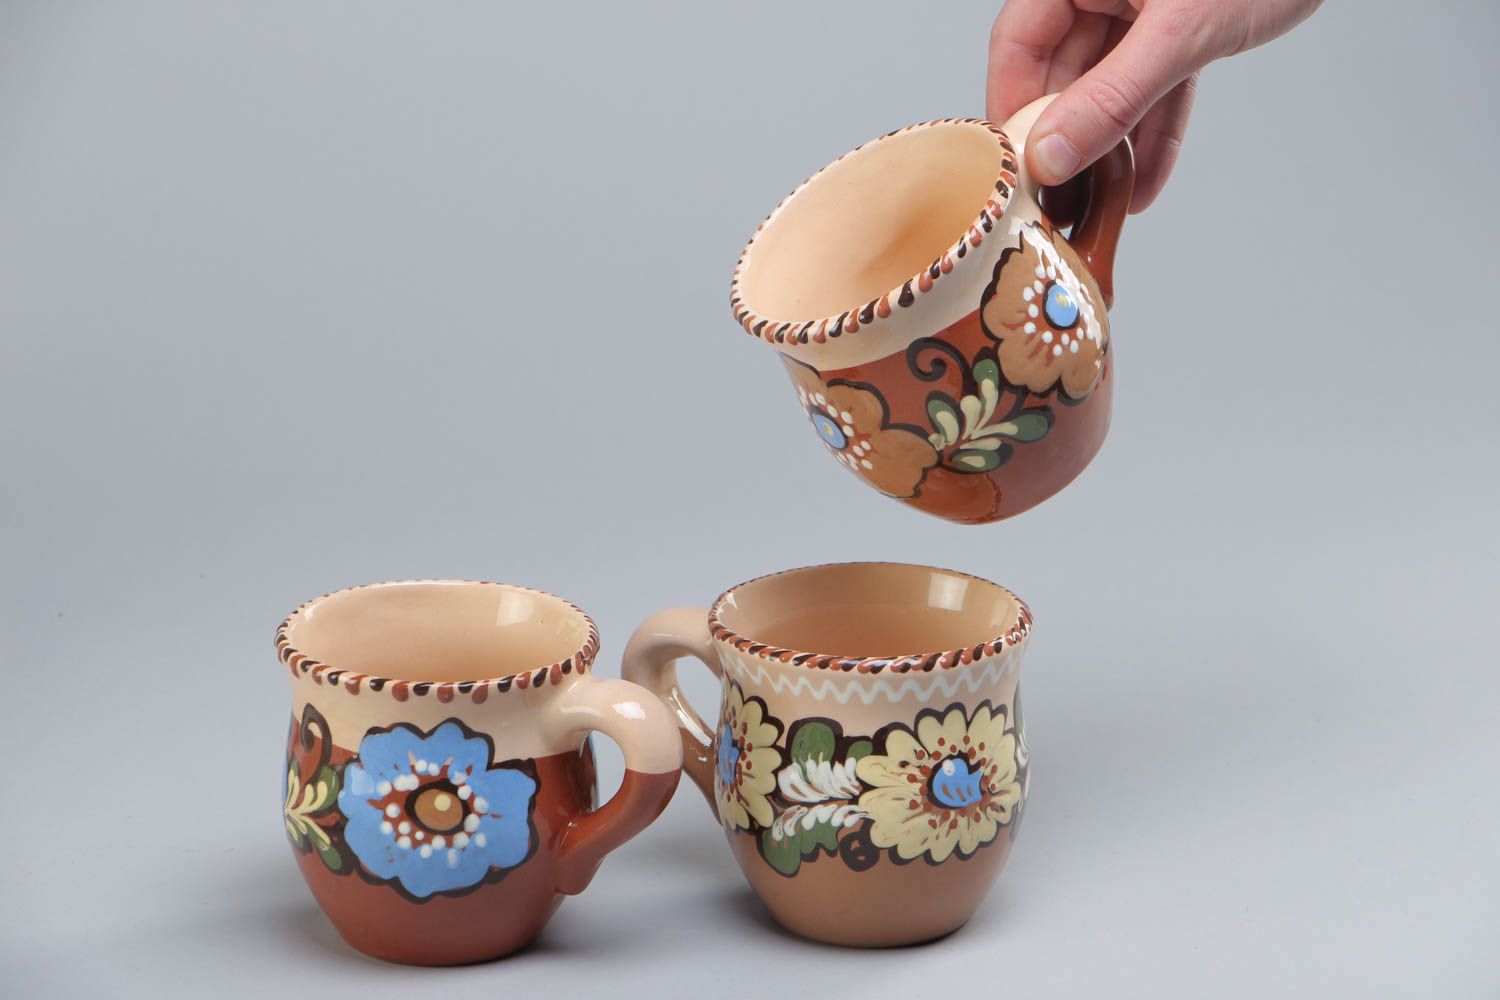 Juego de tazas artesanales de cerámica pintadas con barniz multicolor 3 piezas por 250 ml foto 5